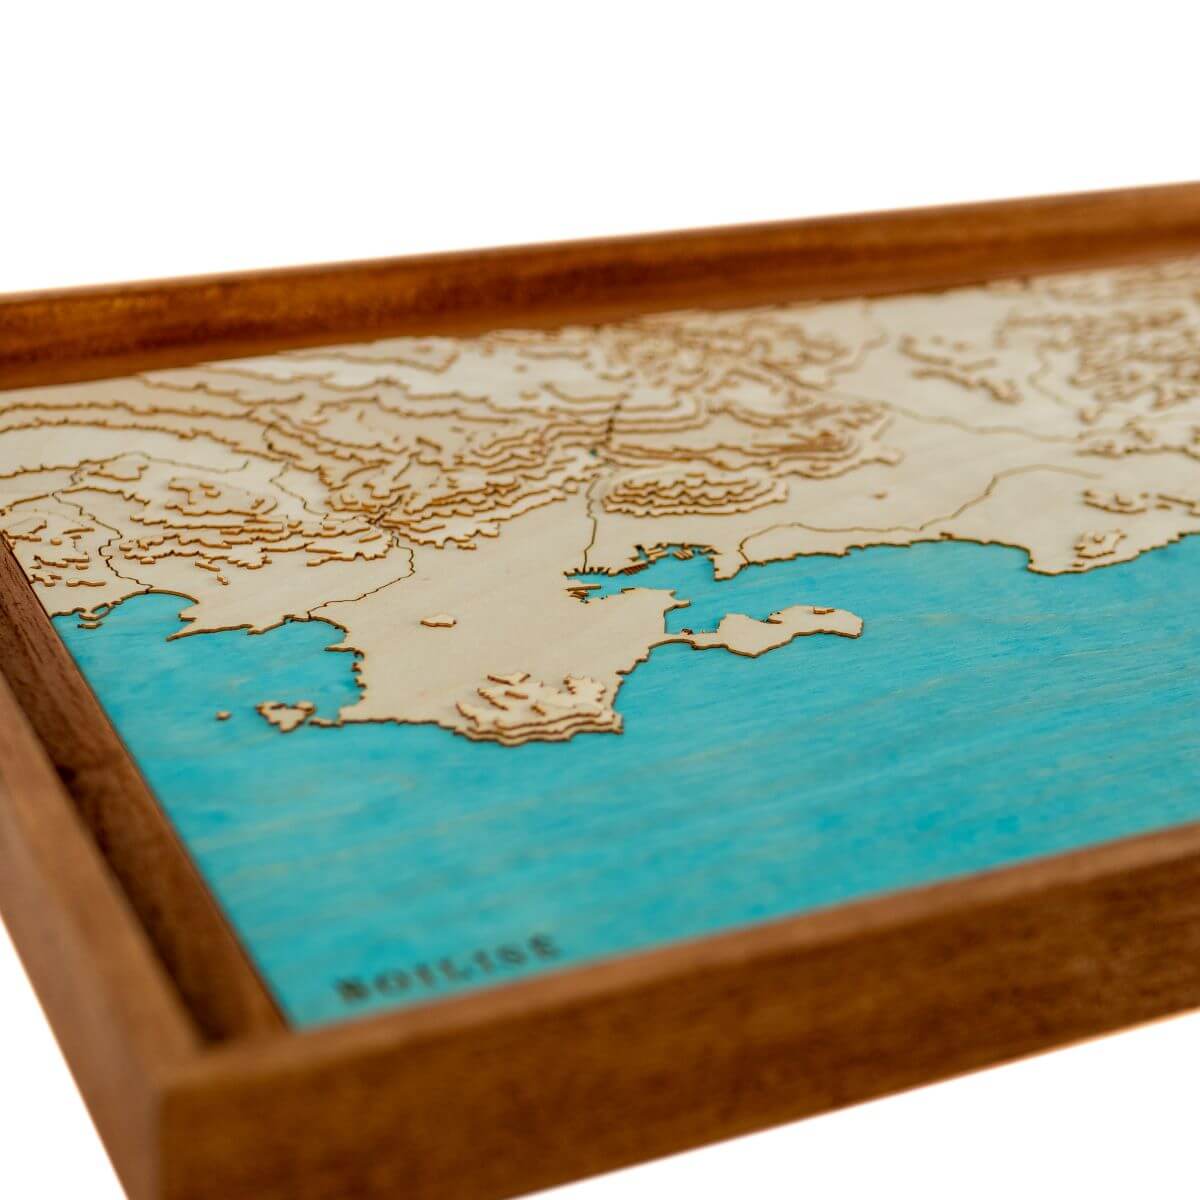 Détails du relief de la carte de la côte des Maures en bois